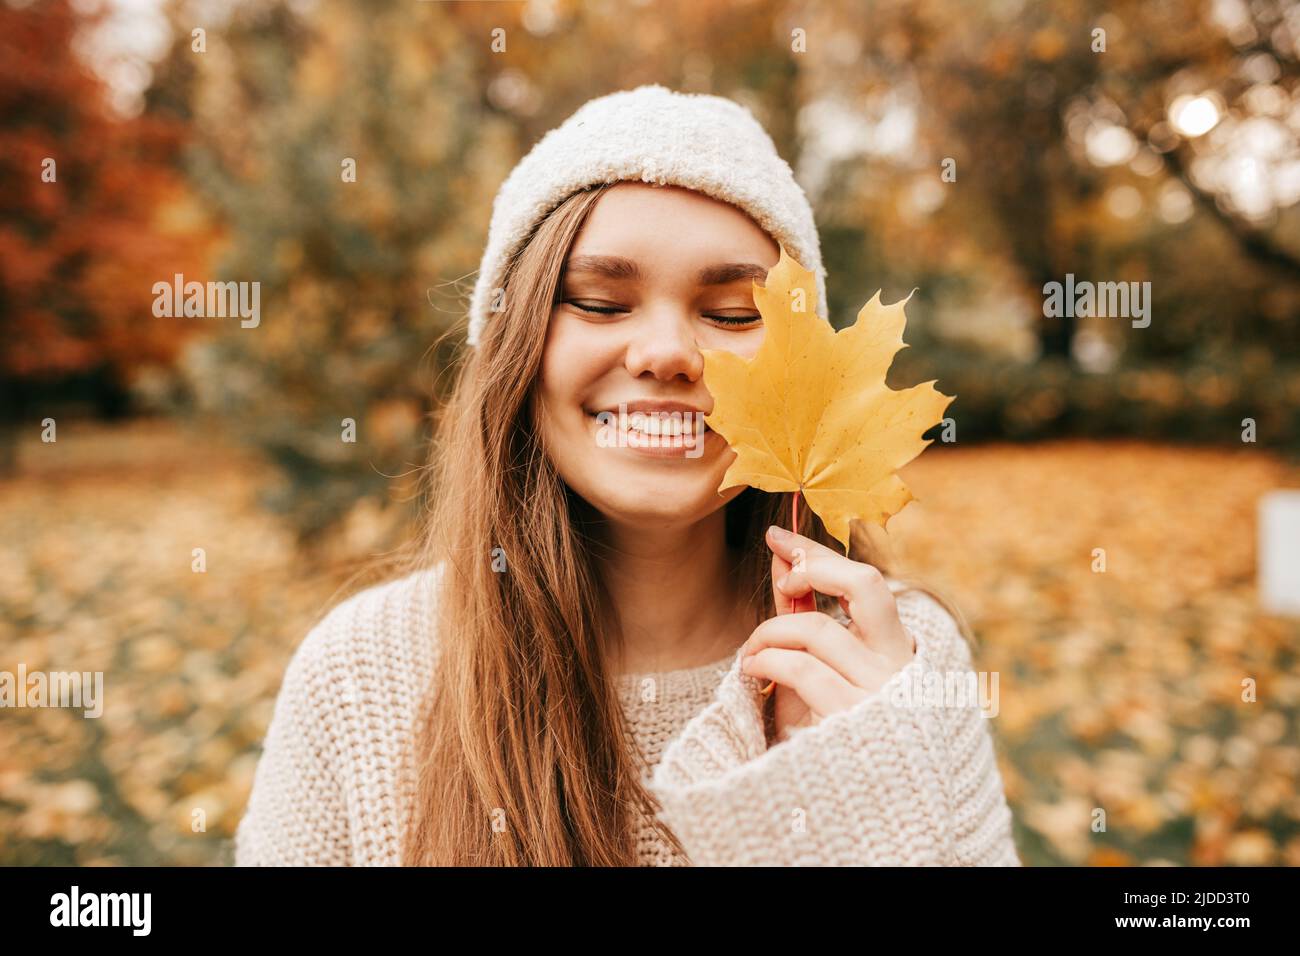 Charmante junge Frau in Strickmütze und Pullover lächelt glücklich auf Spaziergang im Herbstpark, halten gelbe Ahornblatt vor ihr. Genießen Sie den Herbst Stockfoto